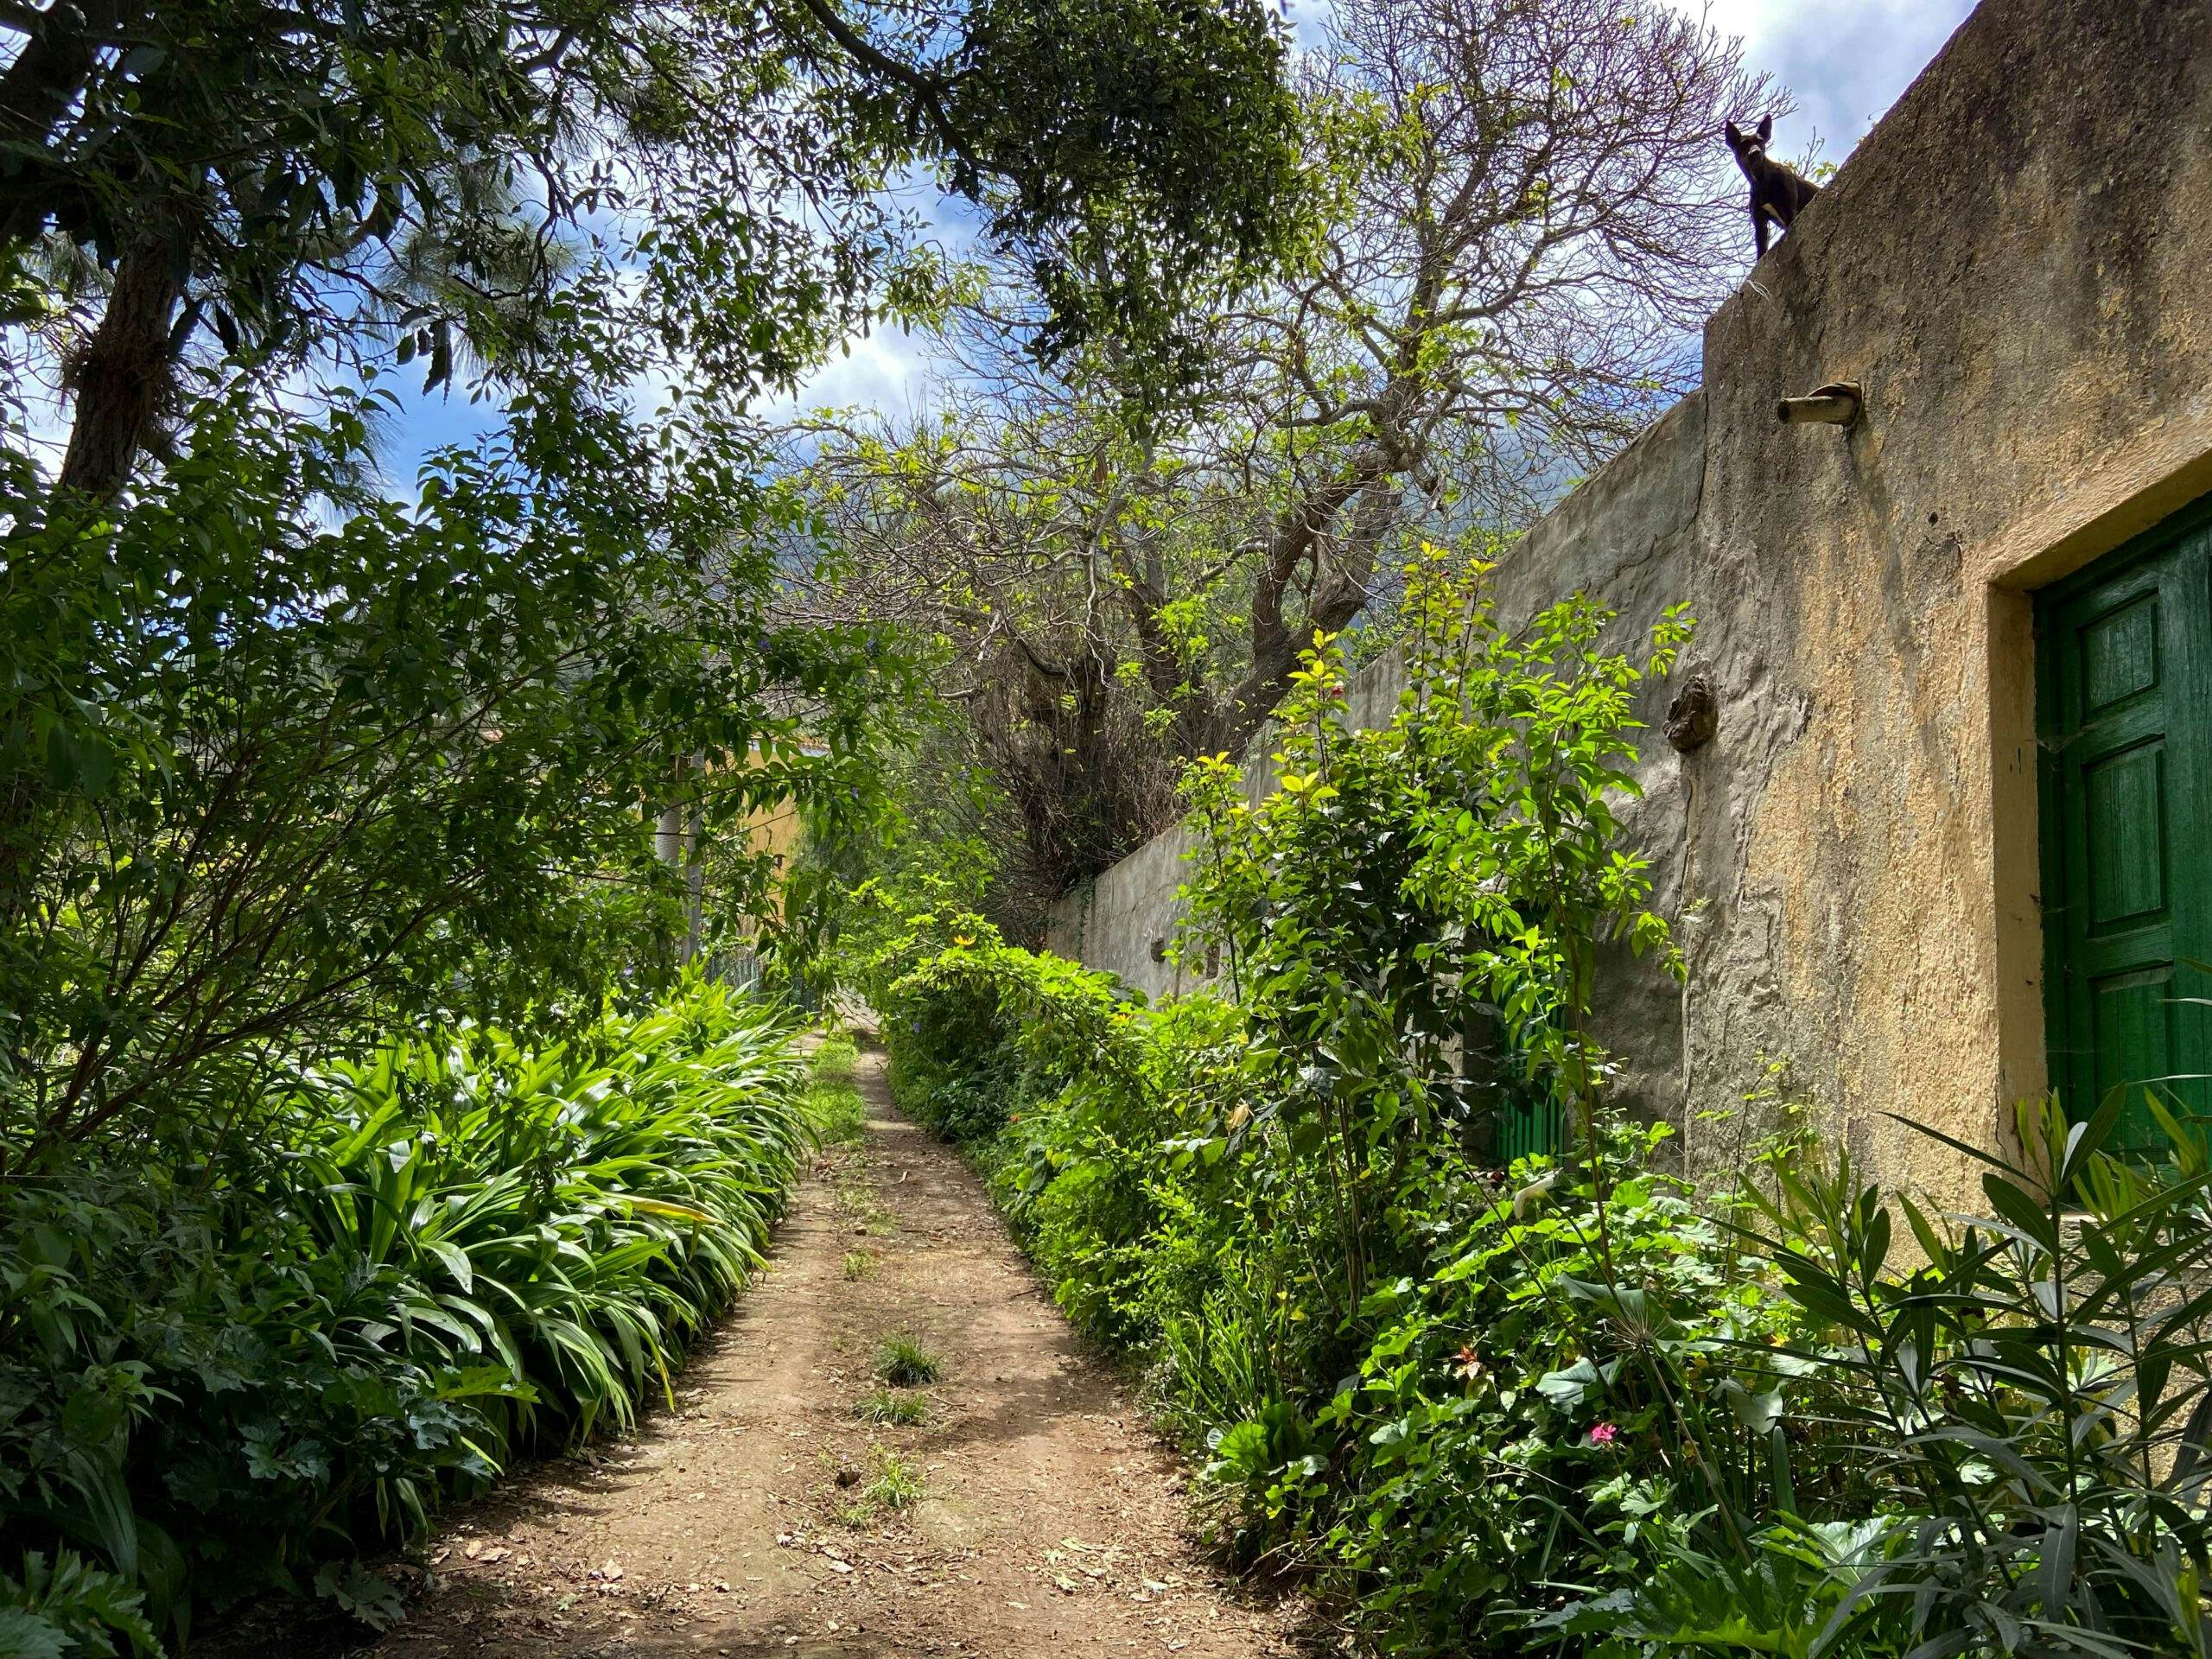 Hiking trail between Chanajiga and Los Realejos